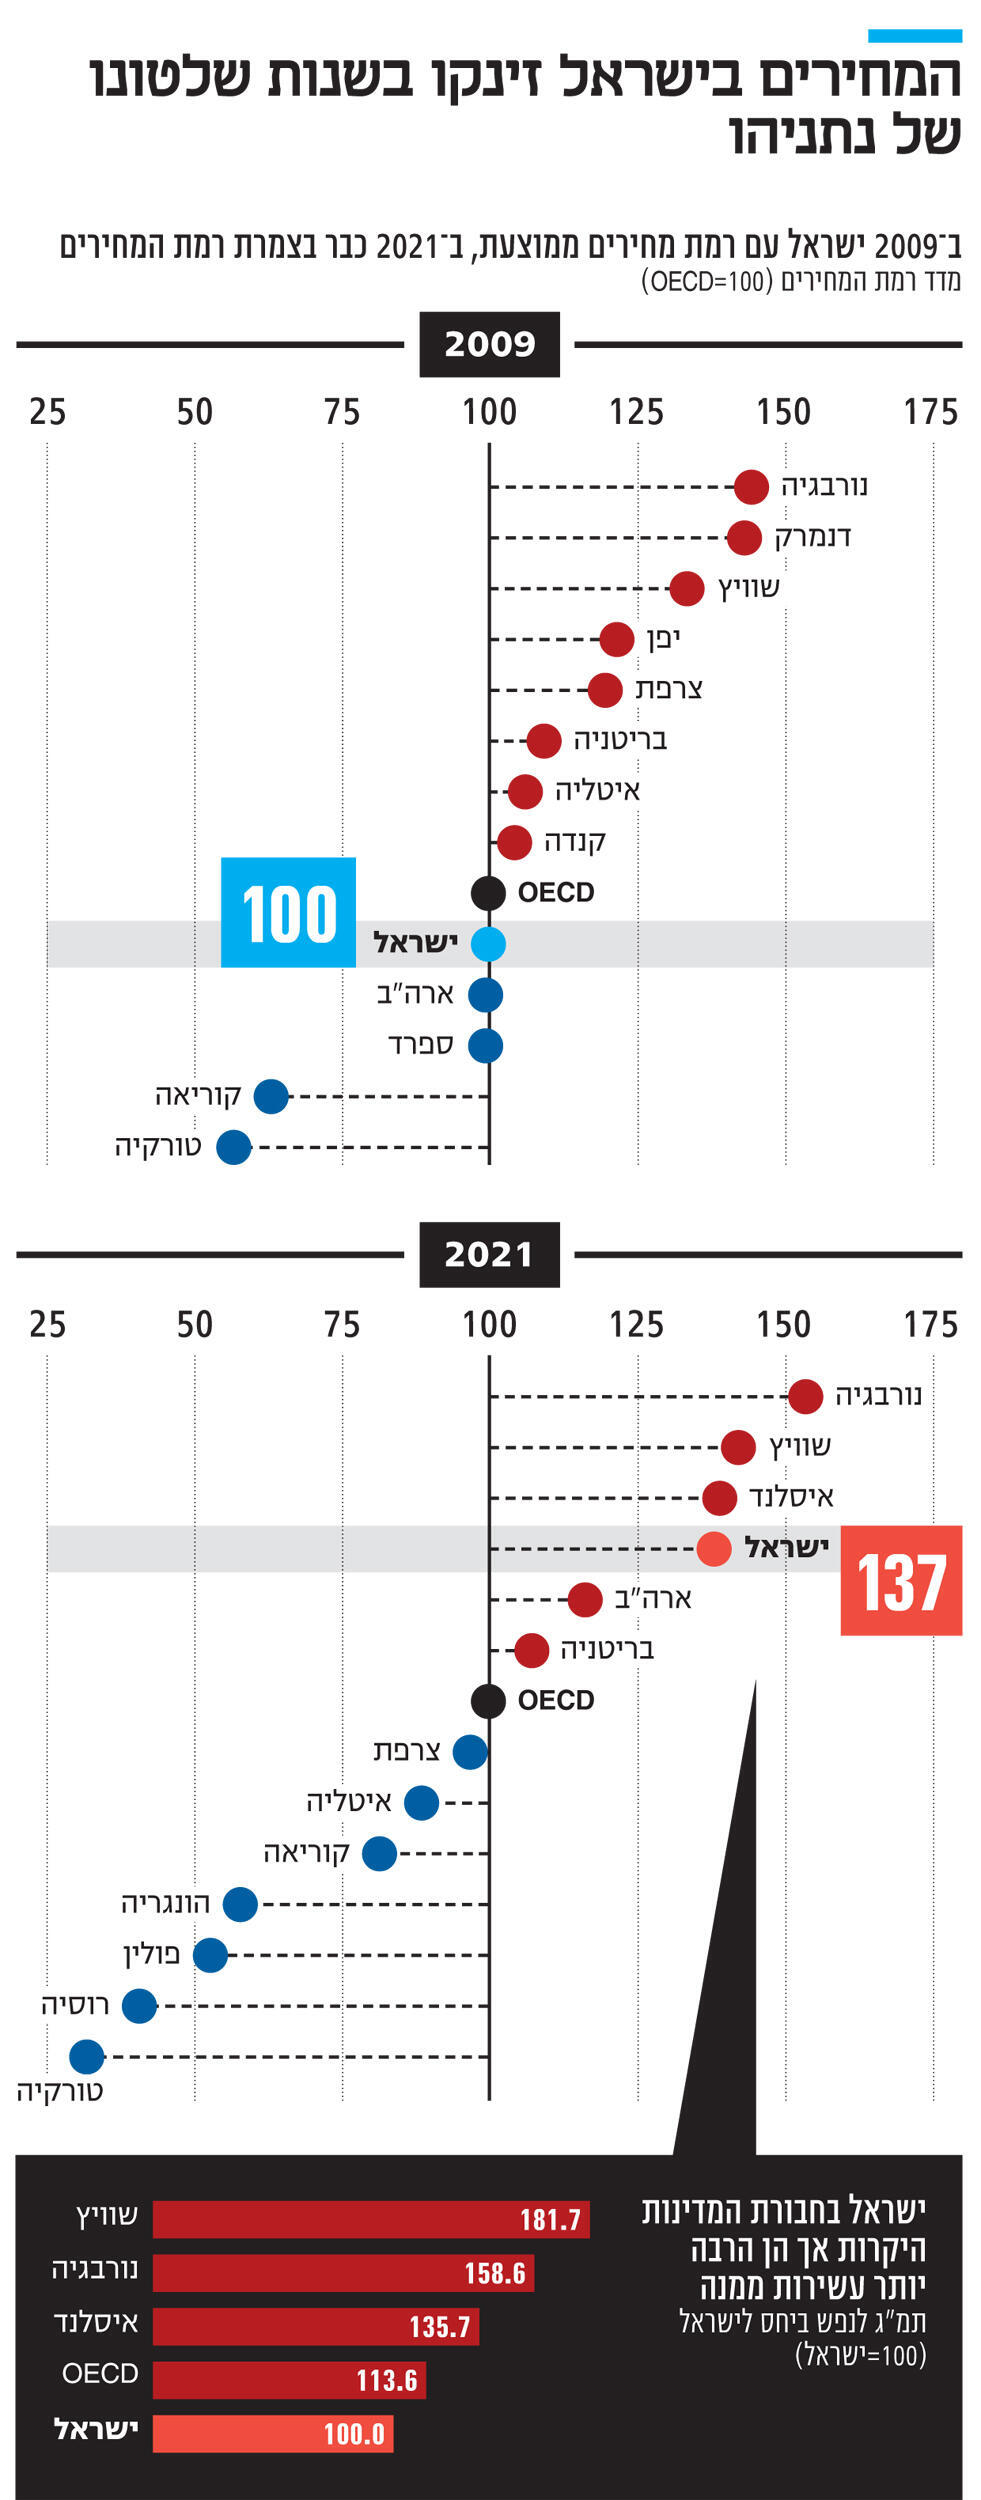 אינפו המחירים בישראל זינקו בשנות שלטונו של נתניהו